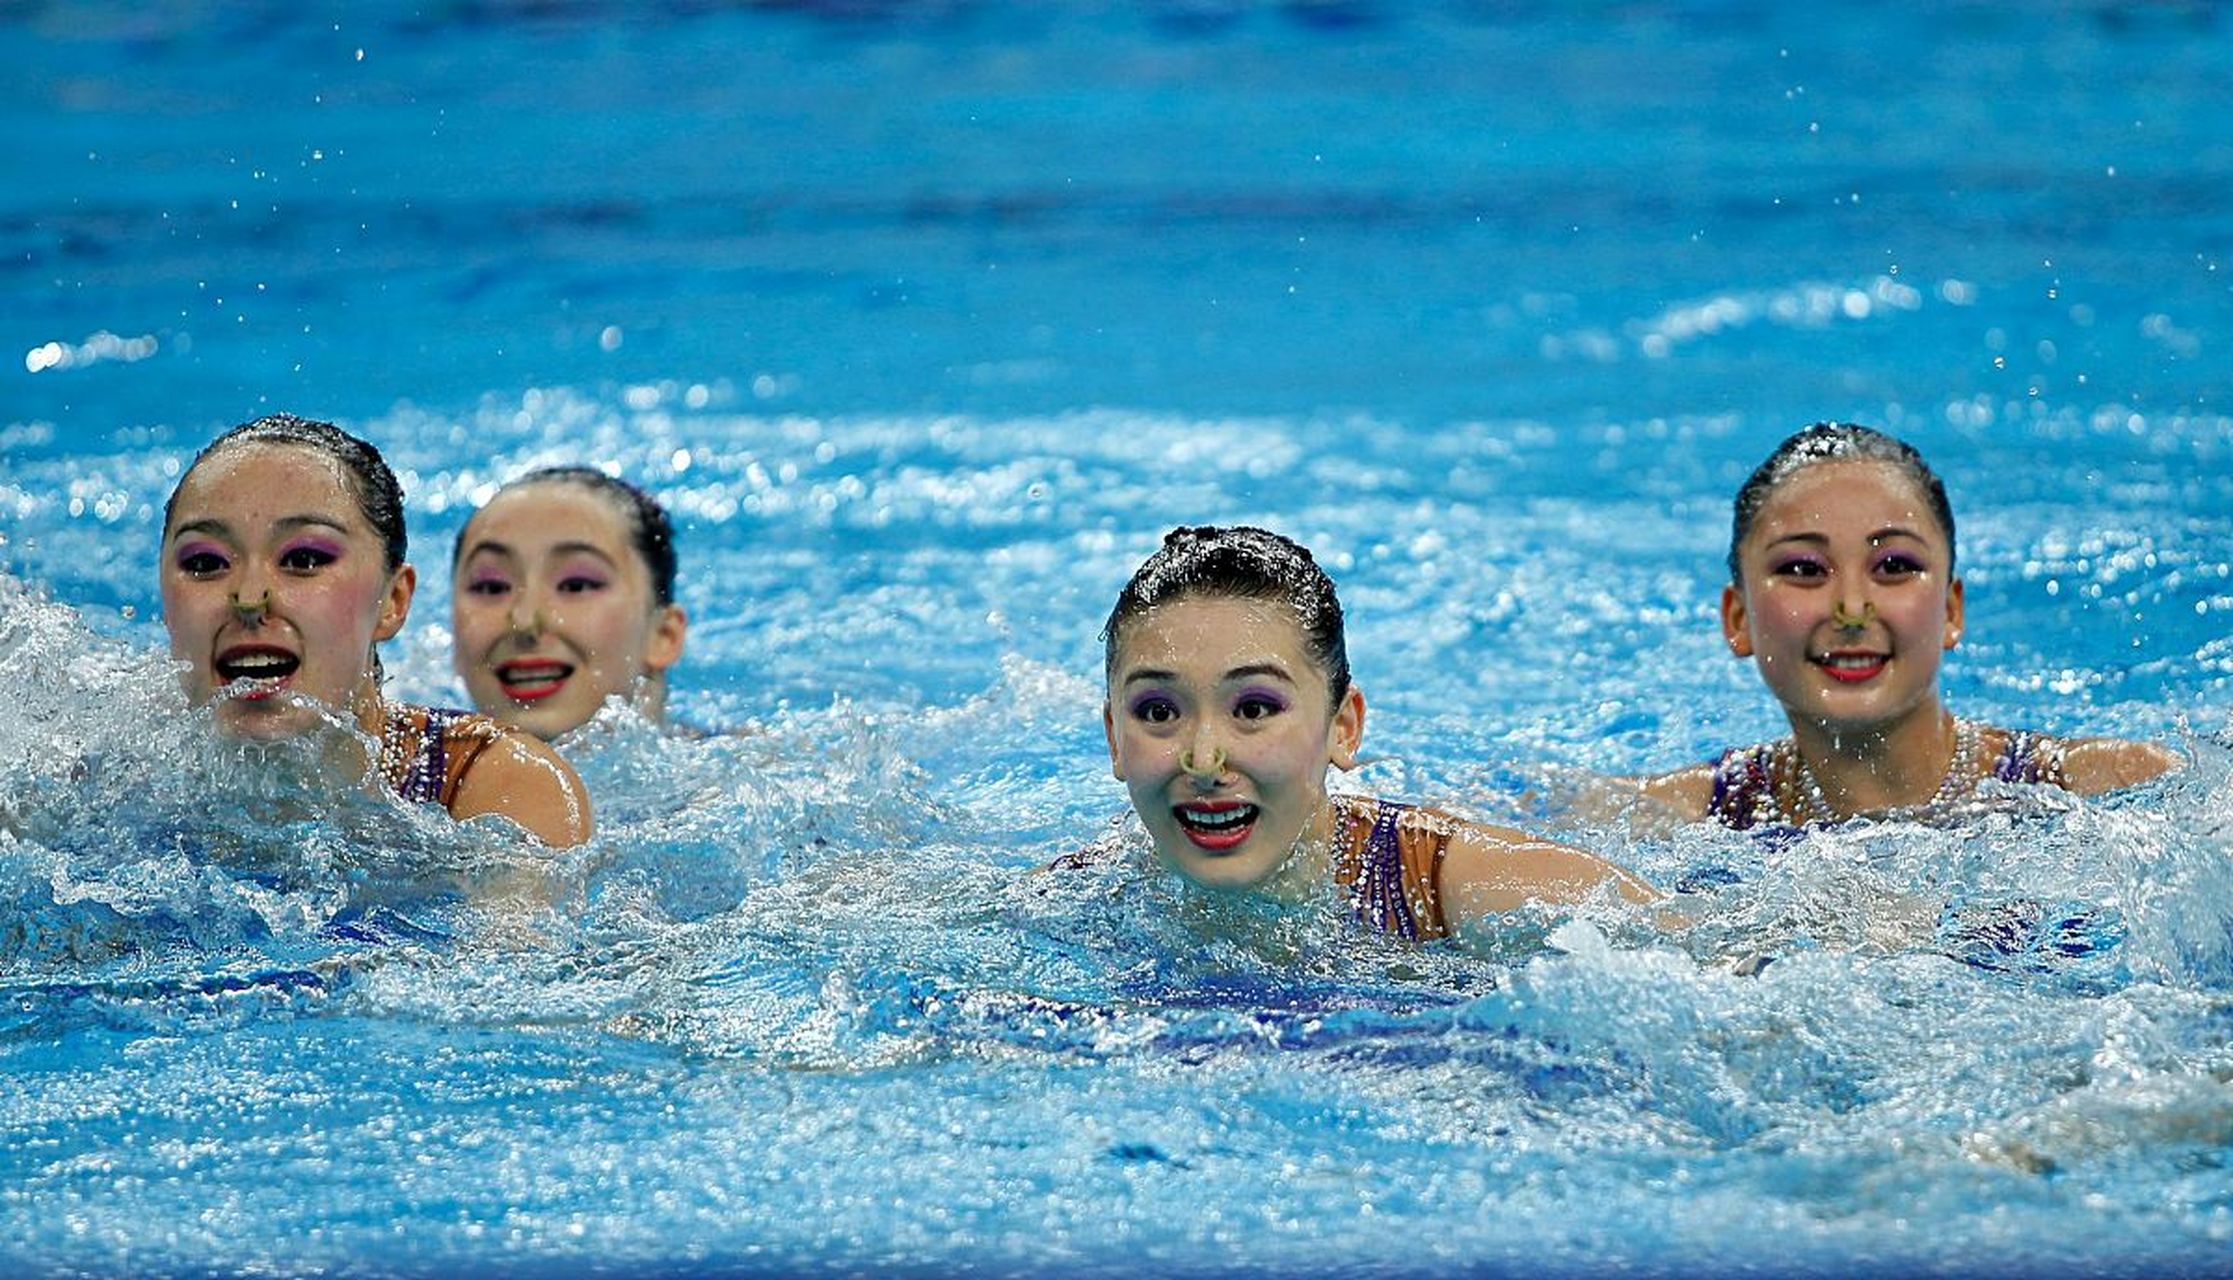 游泳与关节炎:大四学姐的小心得95 996995 作为河南大学的大